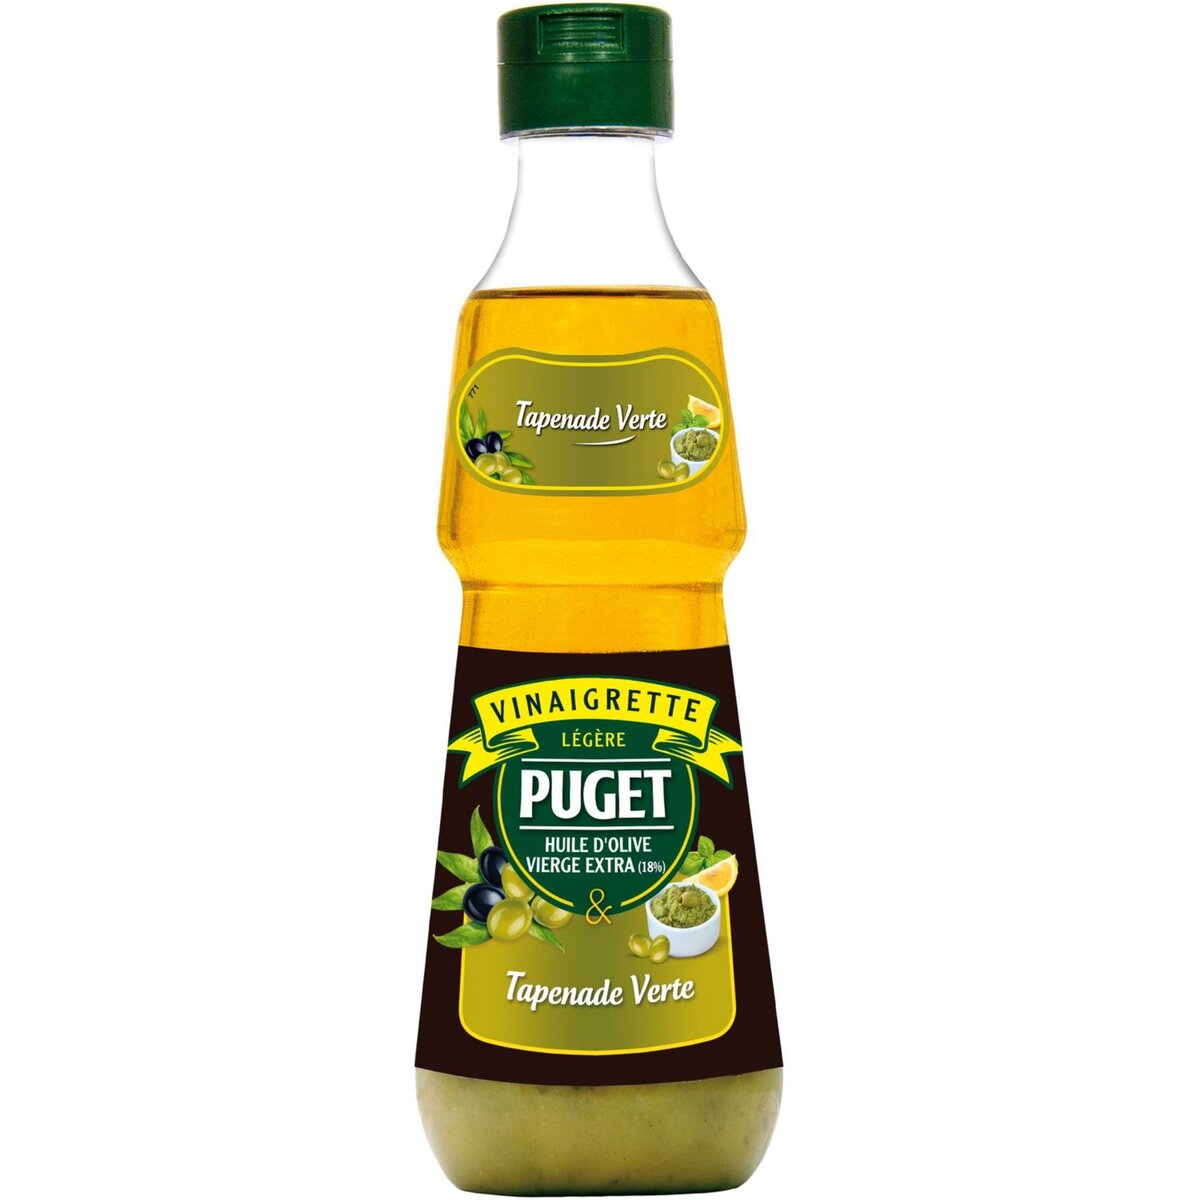 PUGET Puget Vinaigrette légère huile d'olive vierge extra et tapenade verte 33cl 33cl